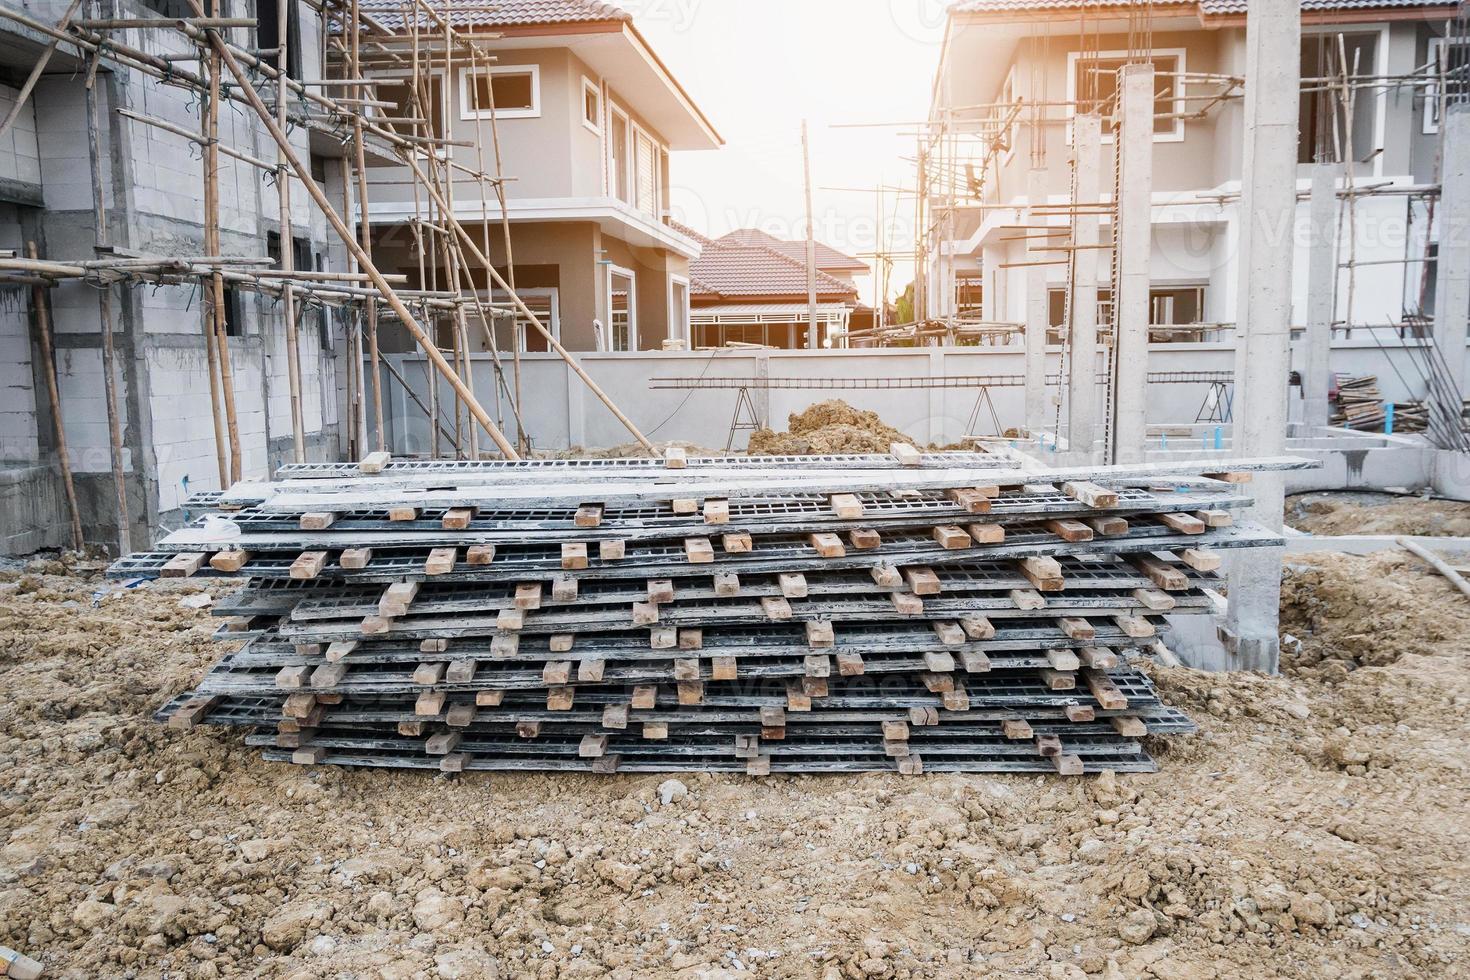 installation de cadres de coffrage en ciment pour la construction de nouvelles maisons sur le chantier, développement immobilier photo